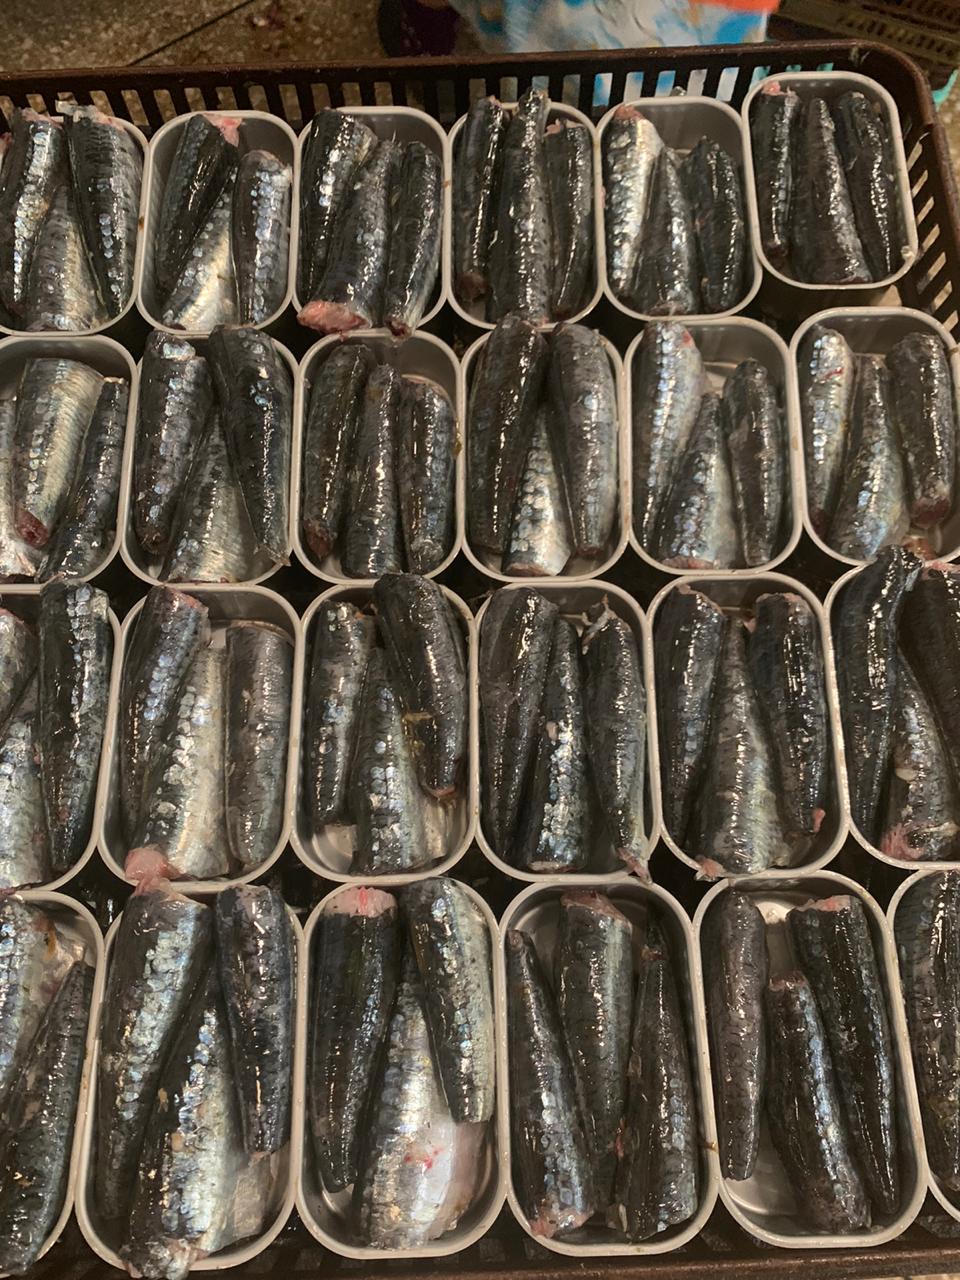 סרדינים מוכנים בקופסאות שימורים לפני הבישול במפעל במרוקו